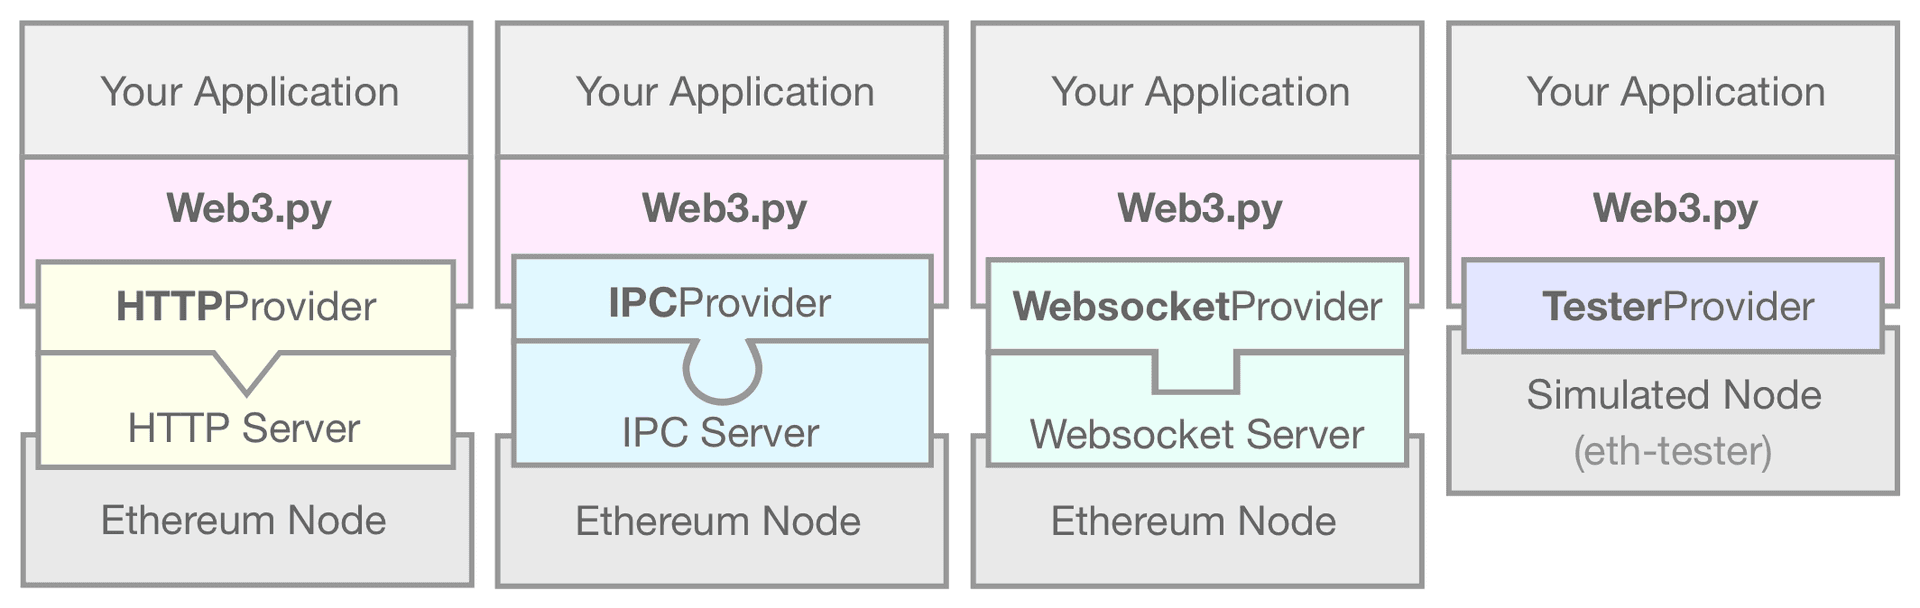 Un diagramme montrant l'EthereumTesterProvider reliant votre application web3.py à un nœud Ethereum simulé